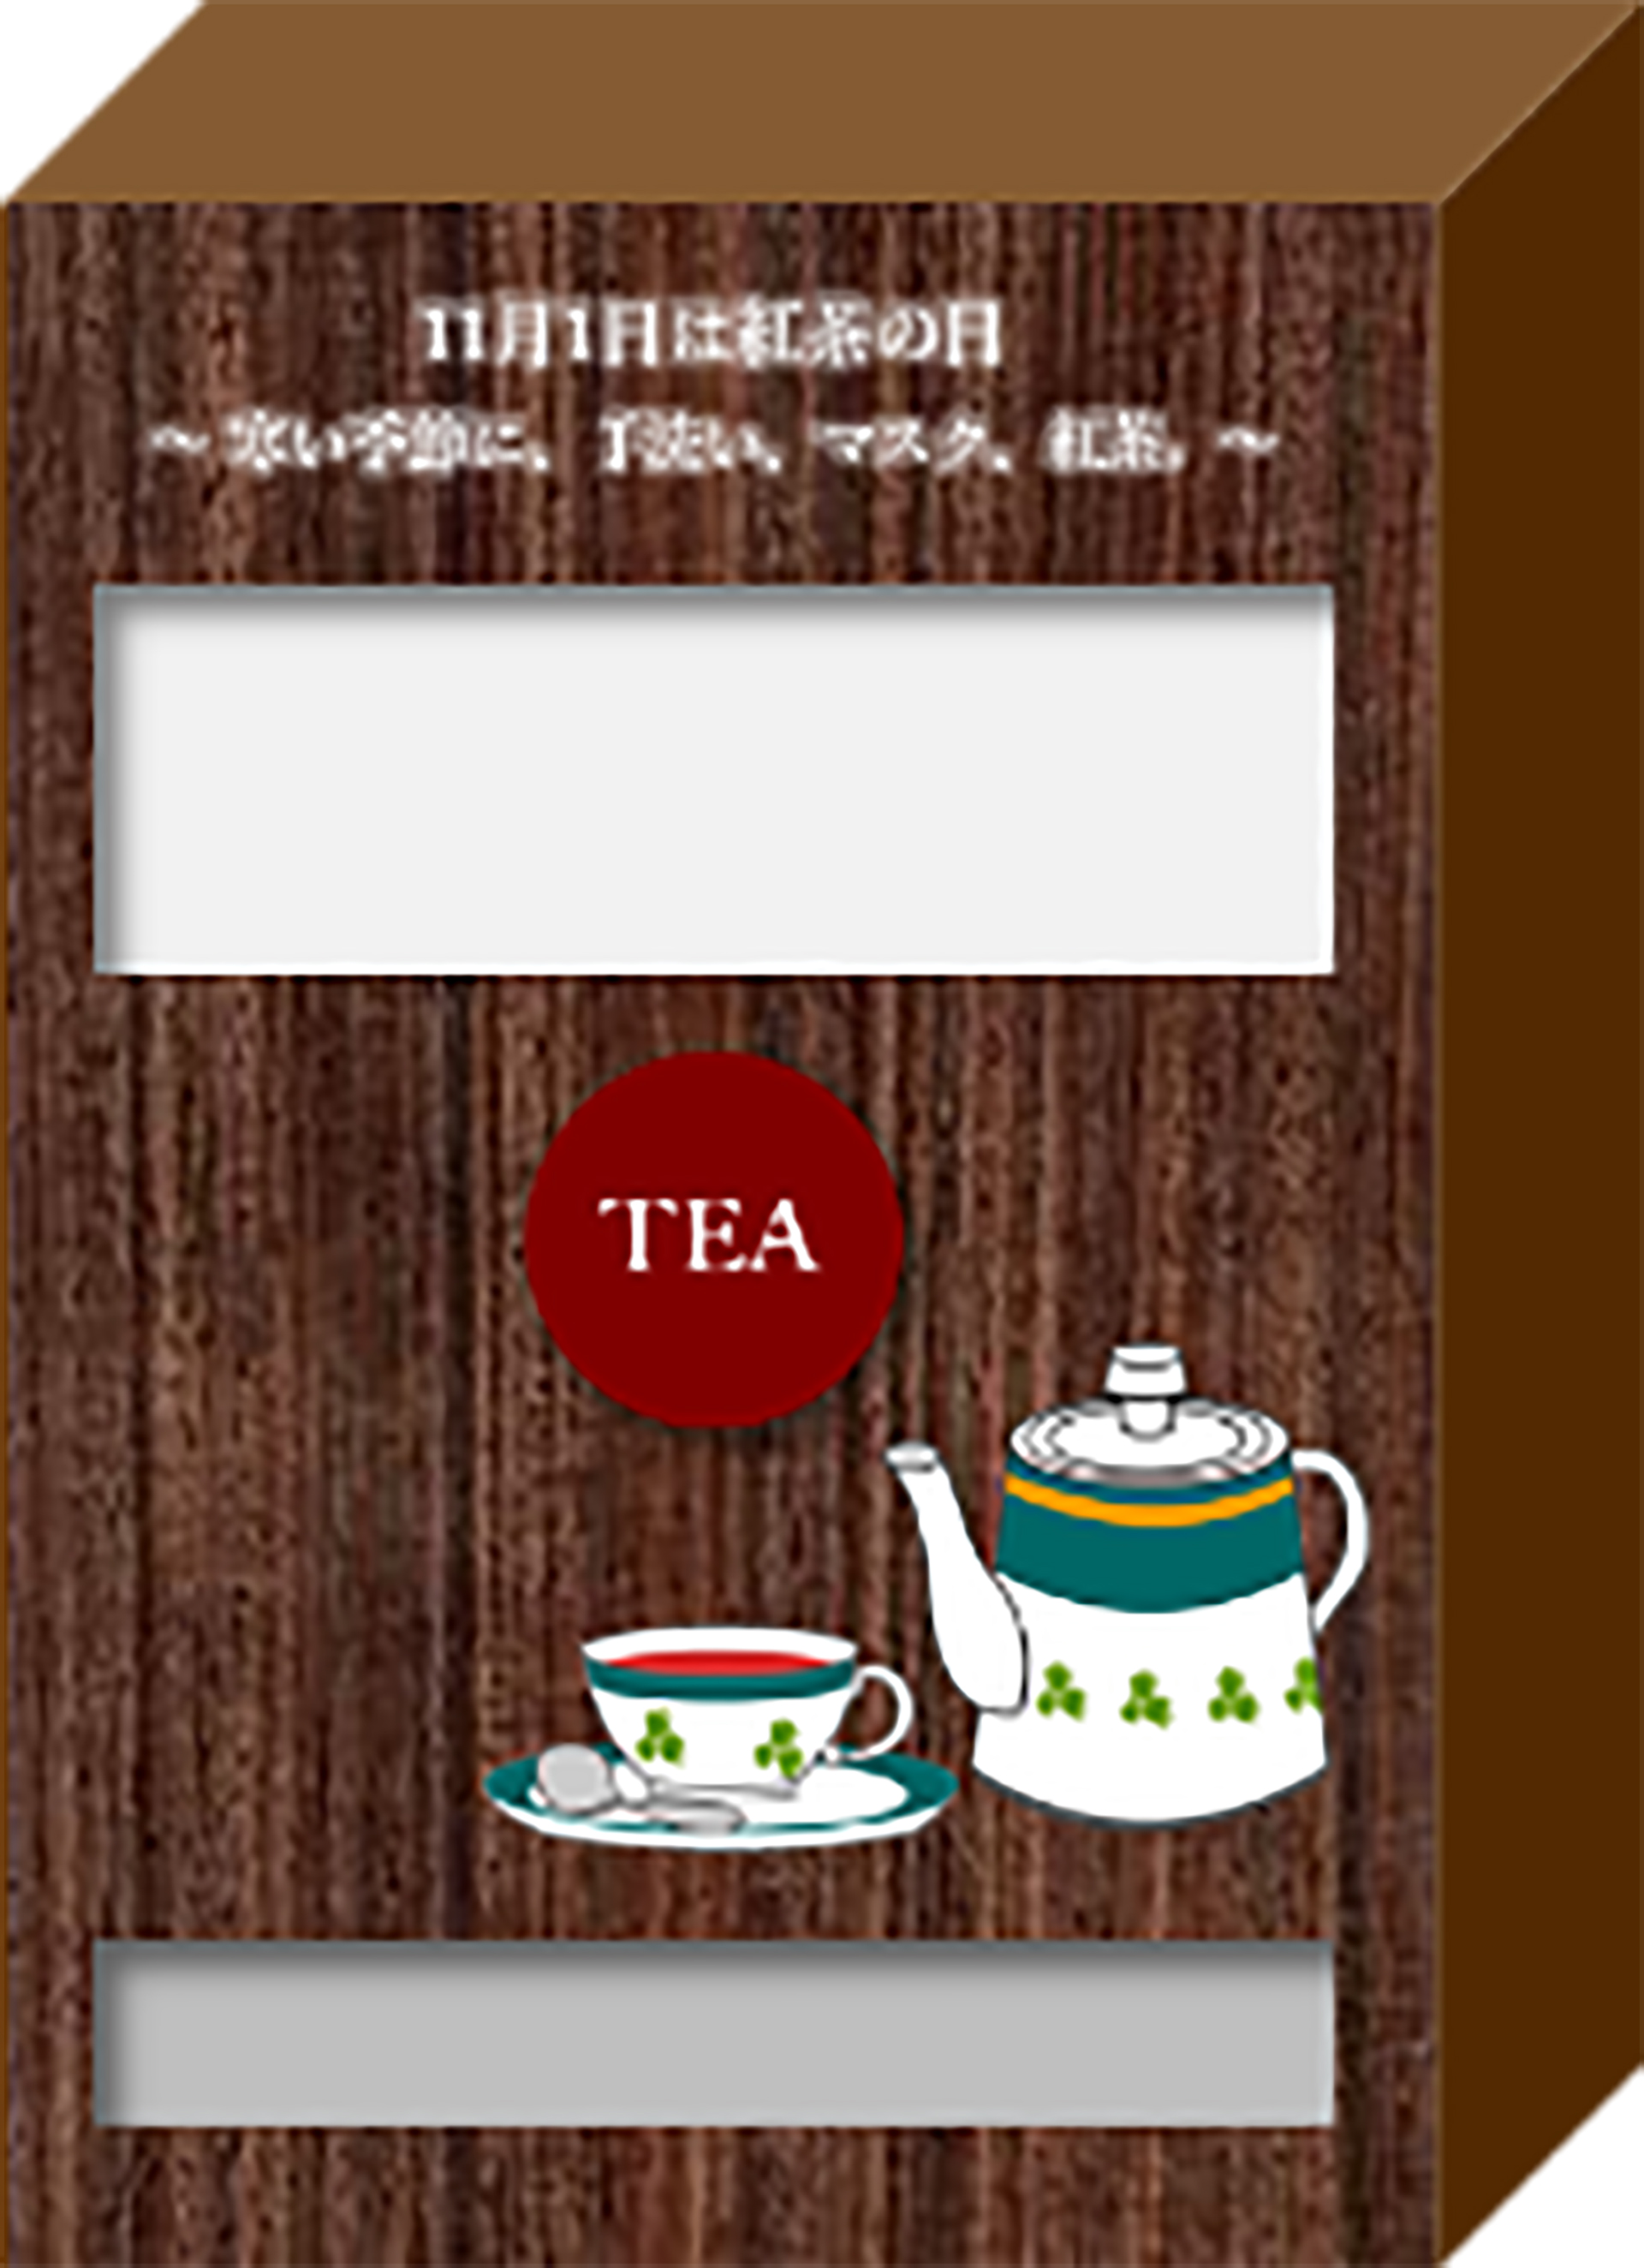 紅茶の日限定サンプリングイベント・自販機